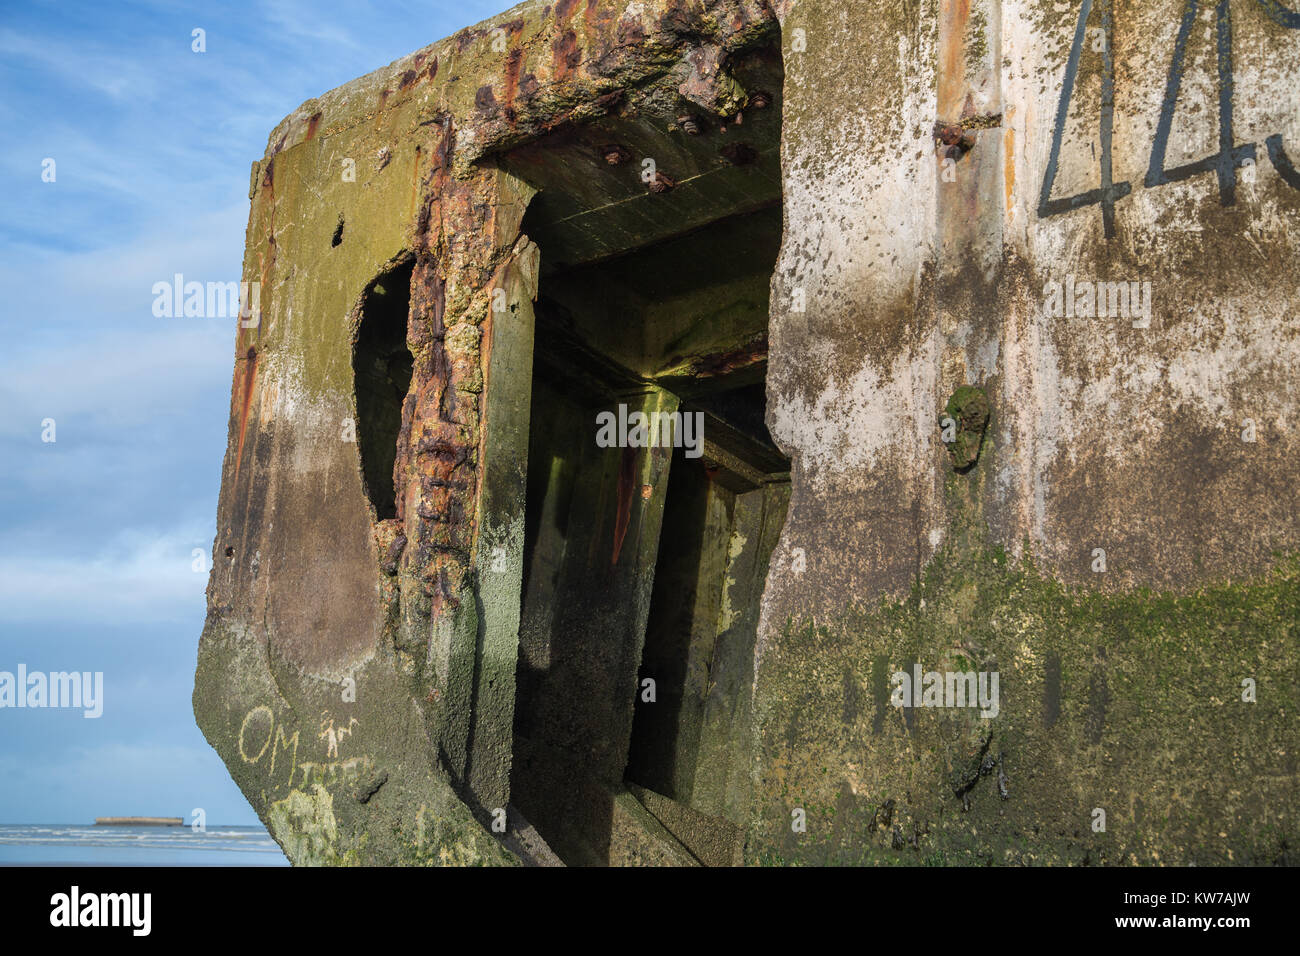 Restes d'une extension de la plate-forme du port Mulberry installé en juin 1944 dans le cadre du débarquement allié en Normandie. Il est situé sur la plage à l'Arr Banque D'Images